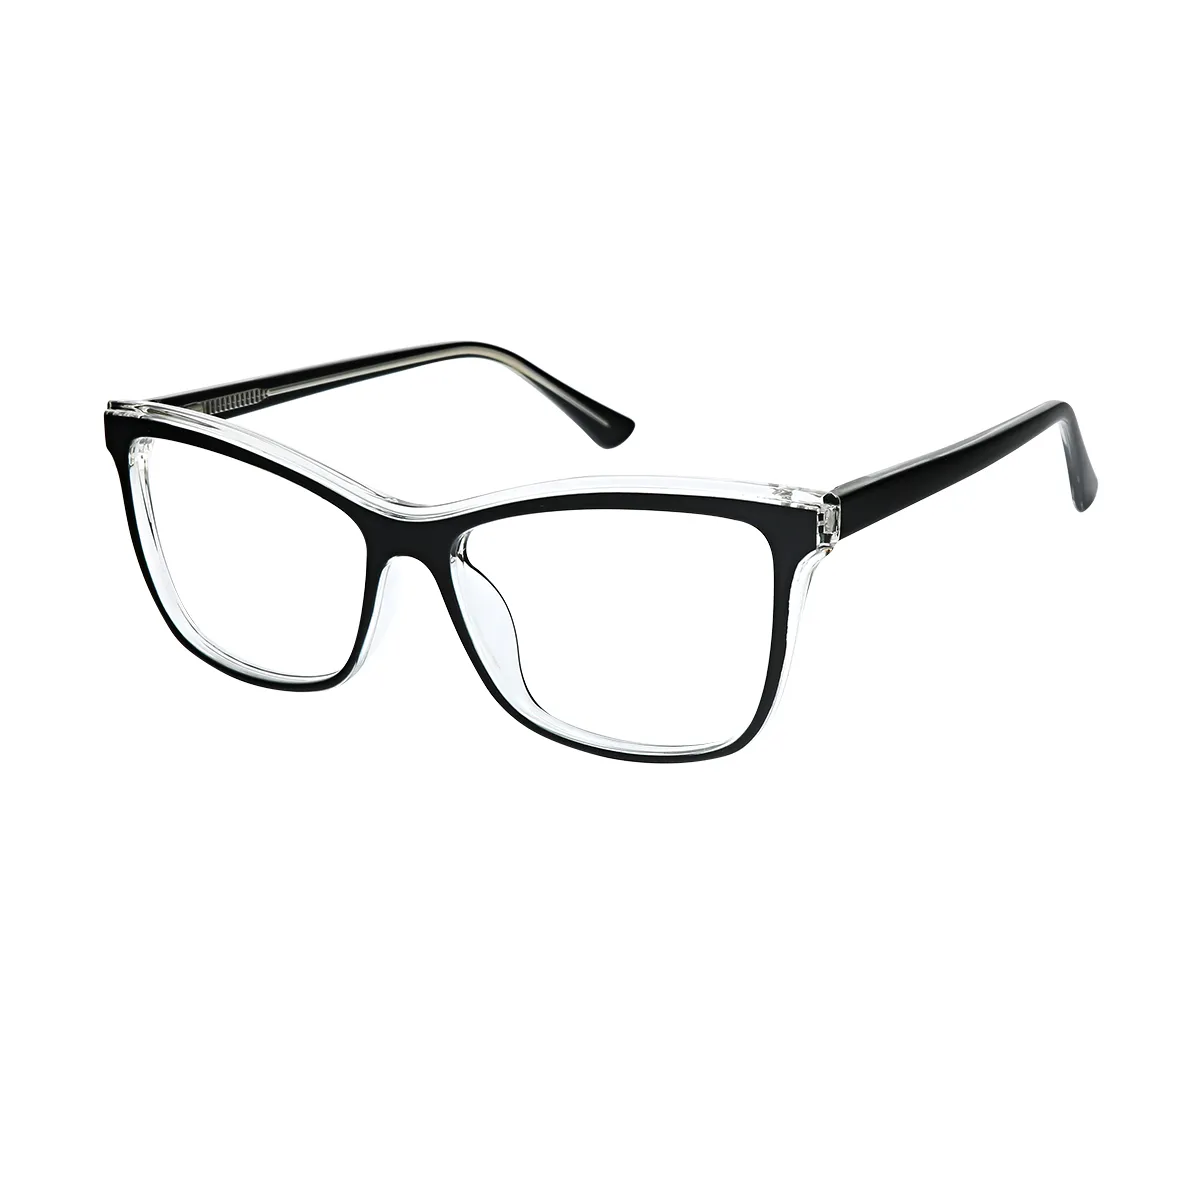 Resonance - Square Black Glasses for Men & Women